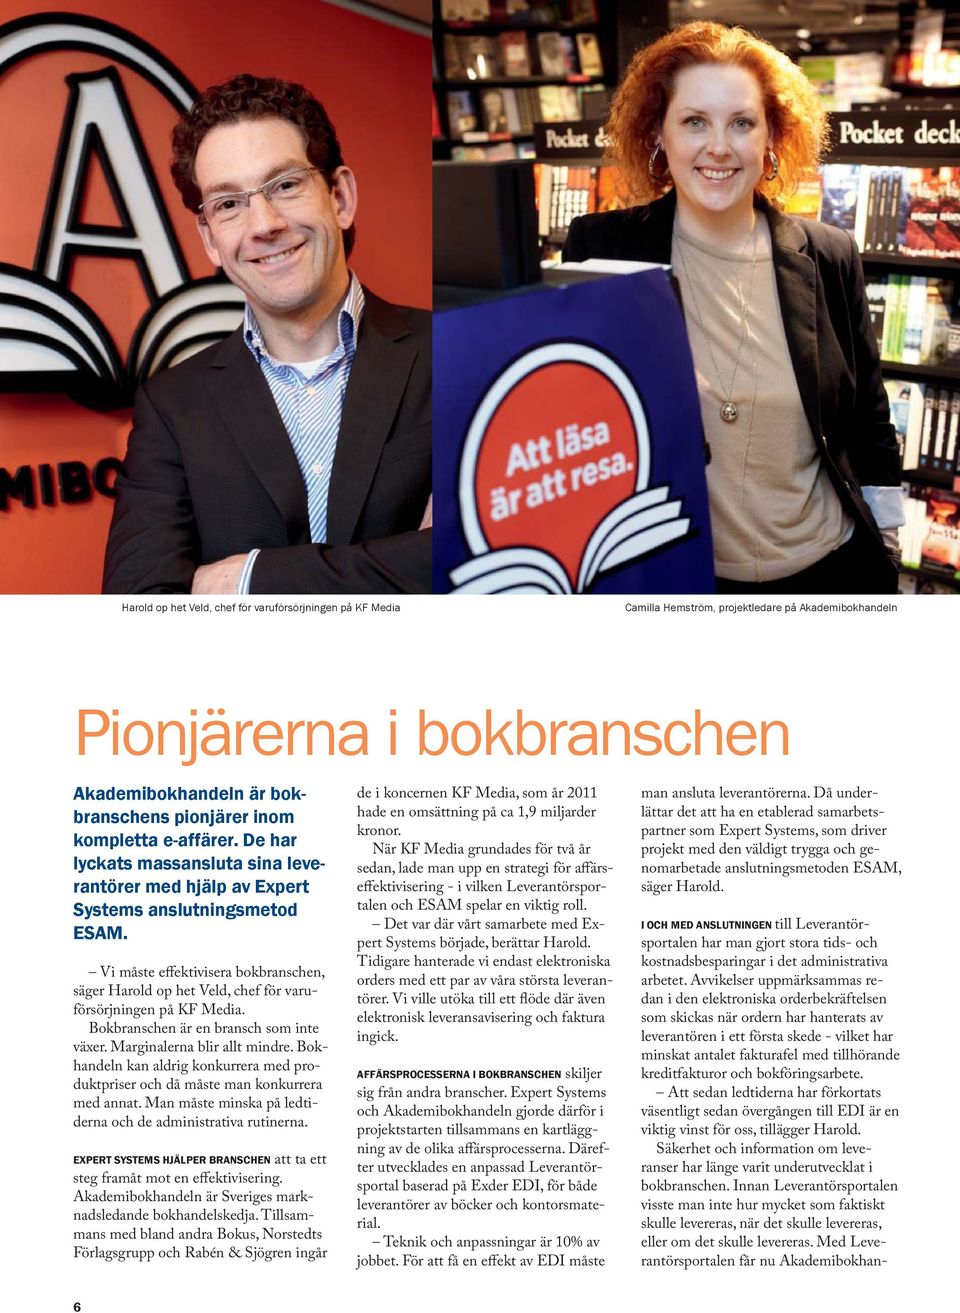 Vi måste effektivisera bokbranschen, säger Harold op het Veld, chef för varuförsörjningen på KF Media. Bokbranschen är en bransch som inte växer. Marginalerna blir allt mindre.